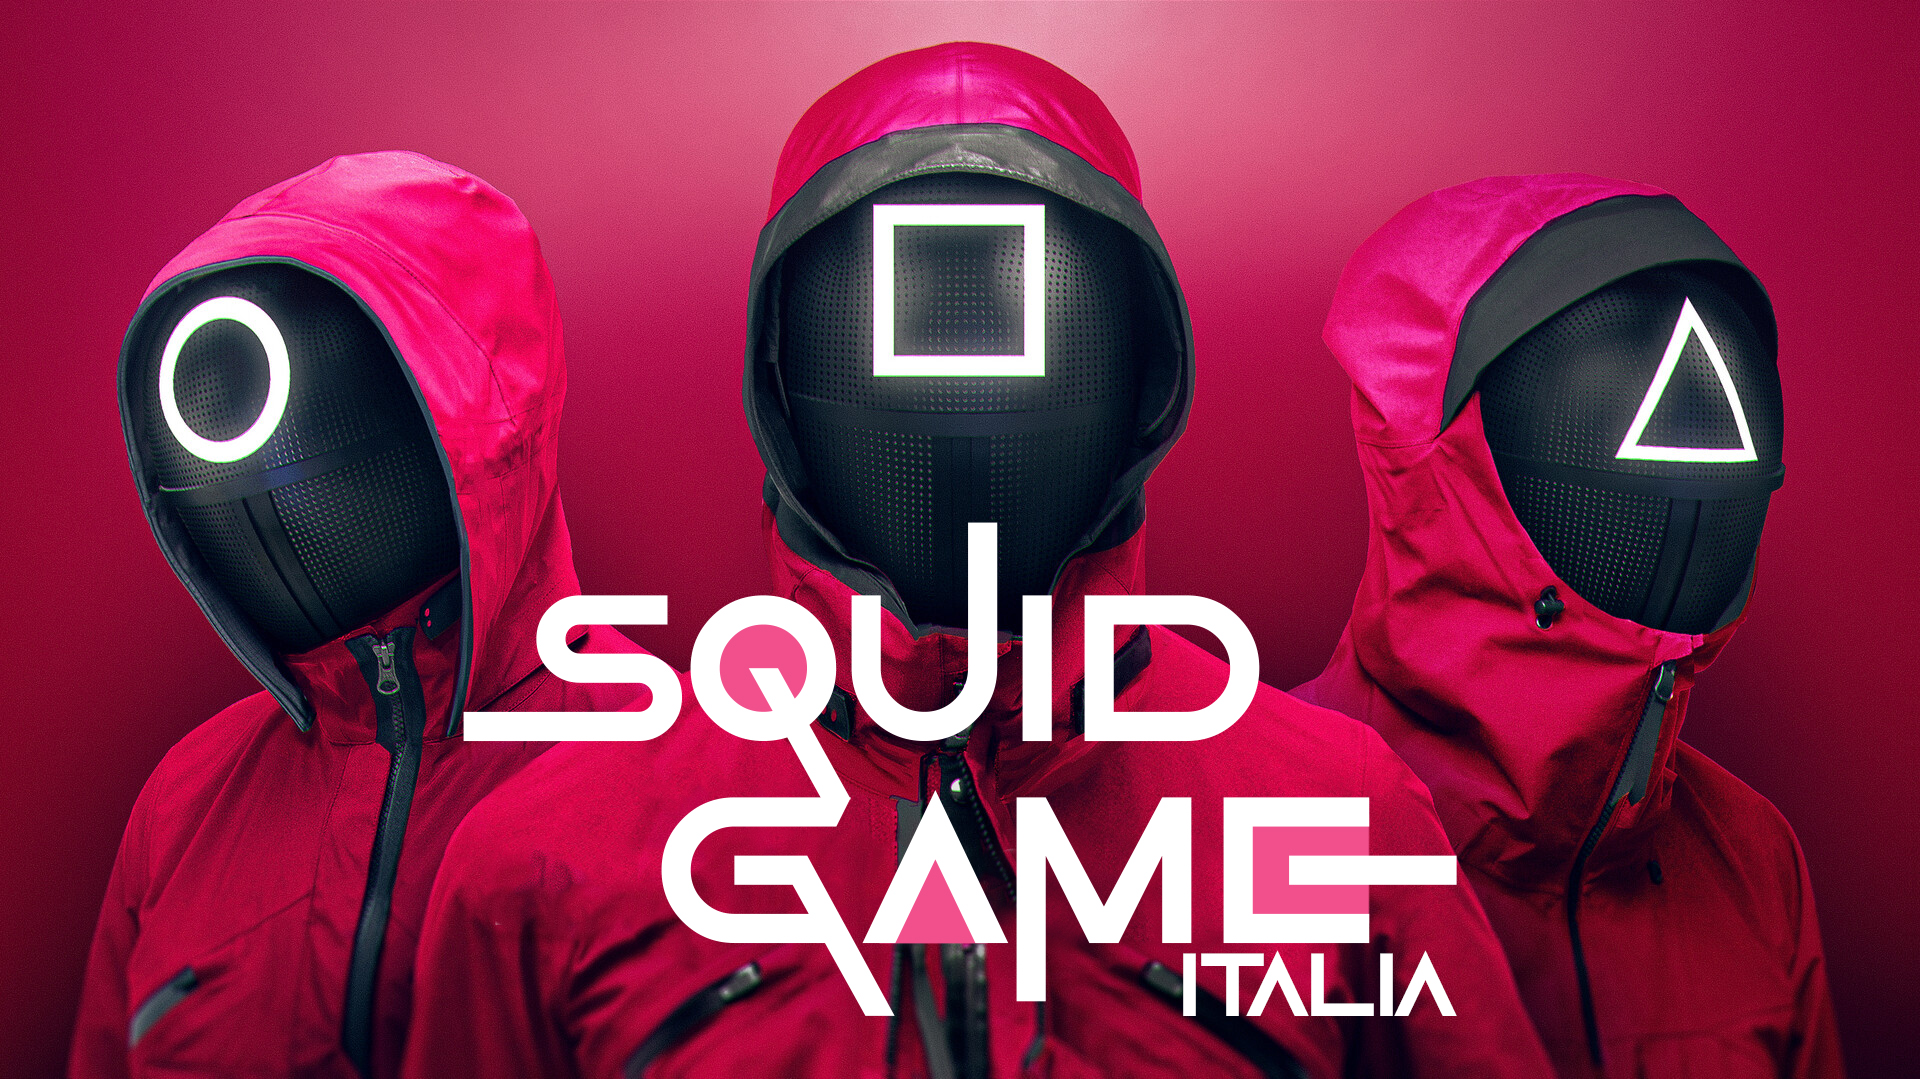 SQUID GAME <br>Squid Game Milano